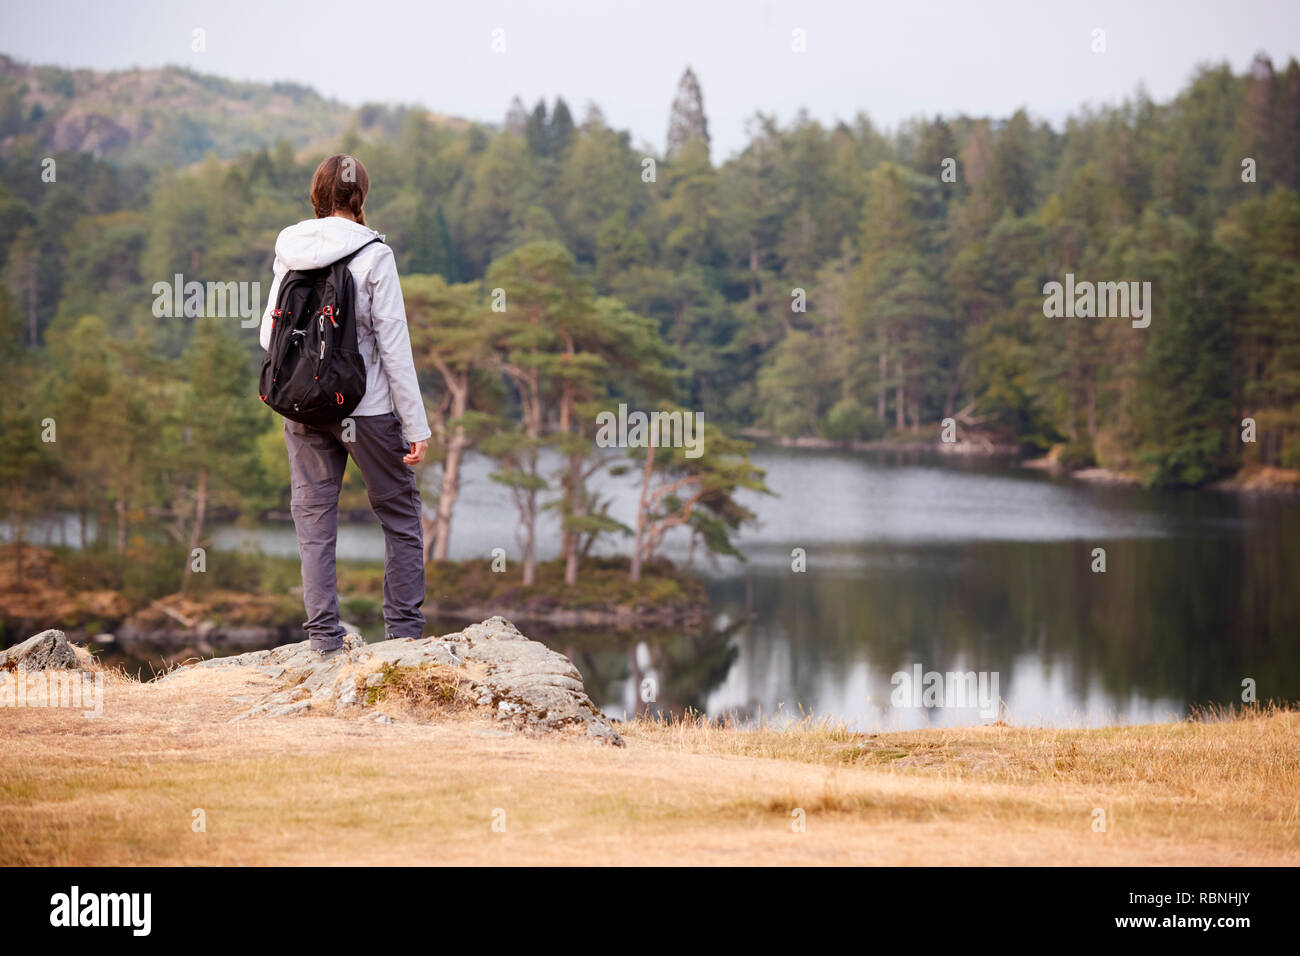 Jeune adulte femme debout sur un rocher à admirer la vue d'un lac, vue de dos, Lake District, UK Banque D'Images